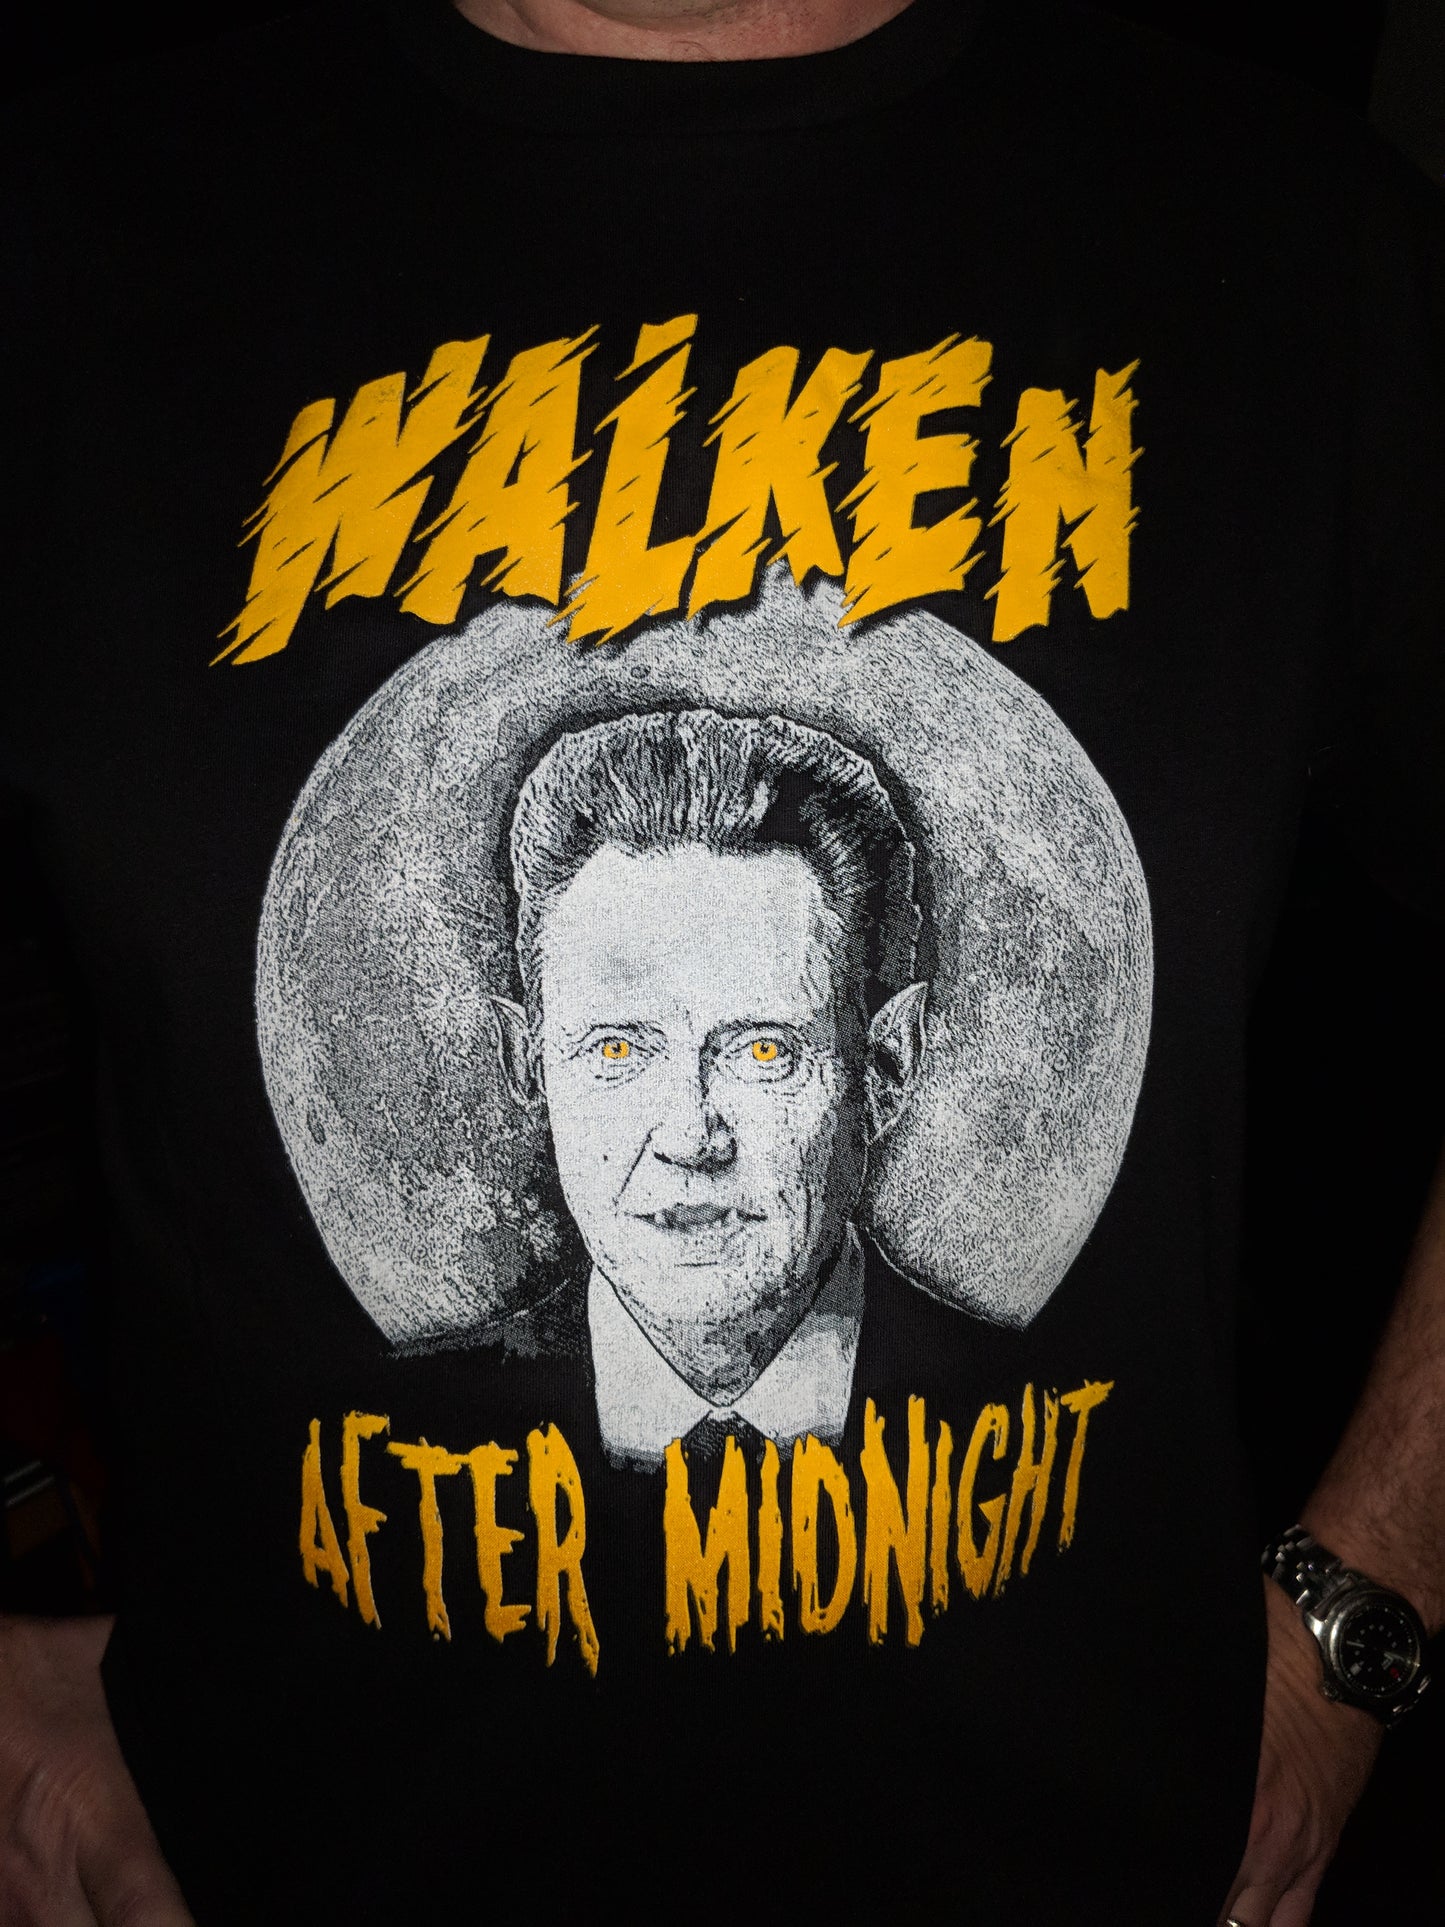 Walken After Midnight T-Shirt